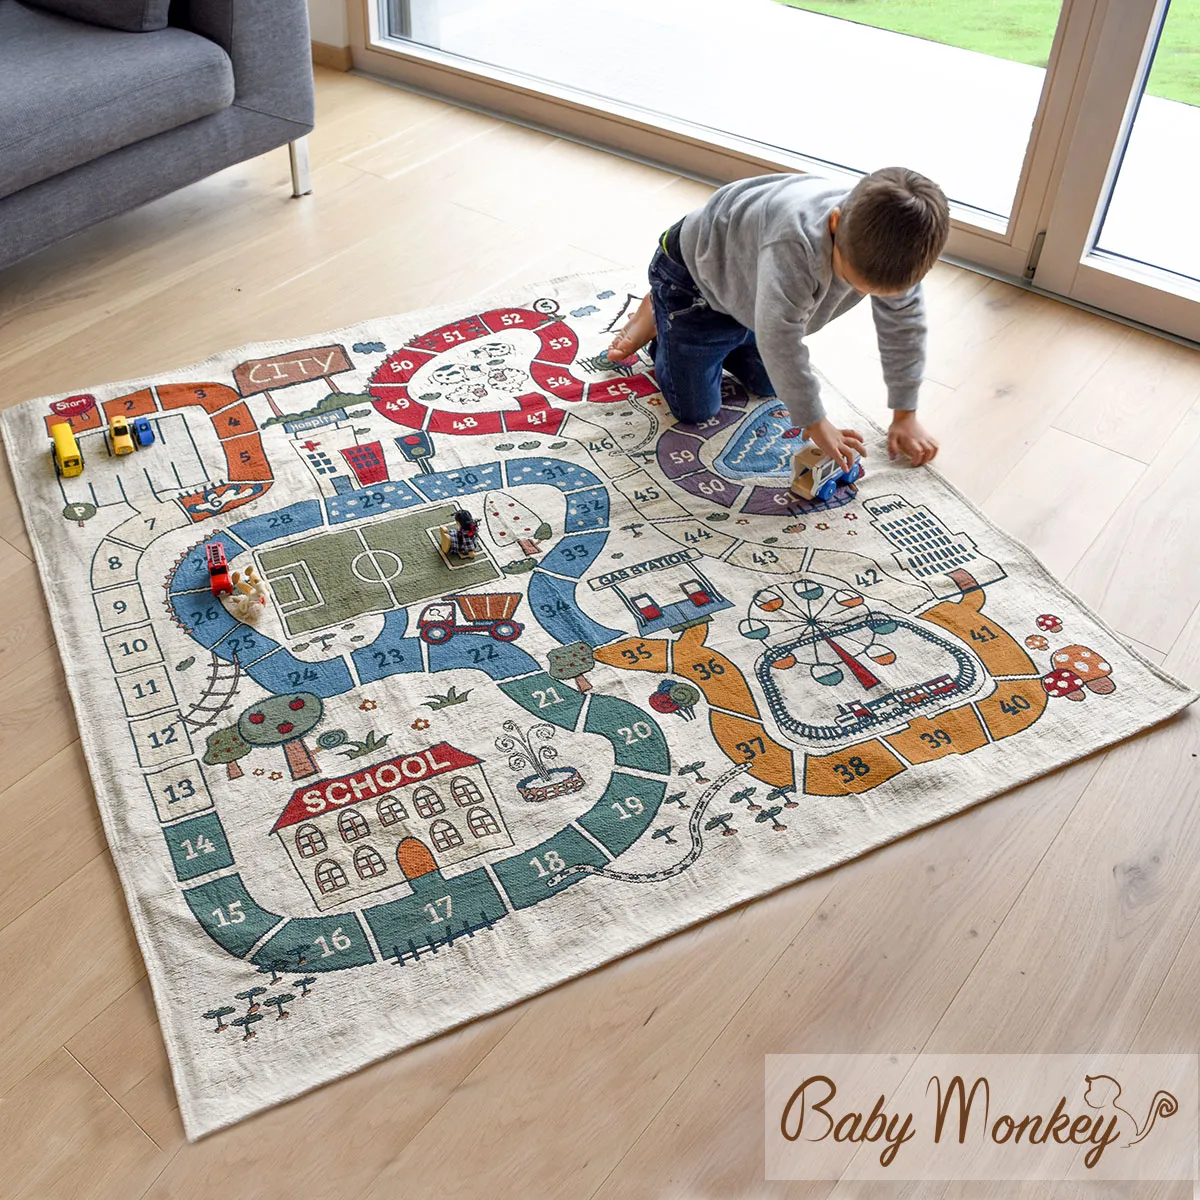 Alfombra de juego para niños alfombra bebé alfombra niña con corazón estrel